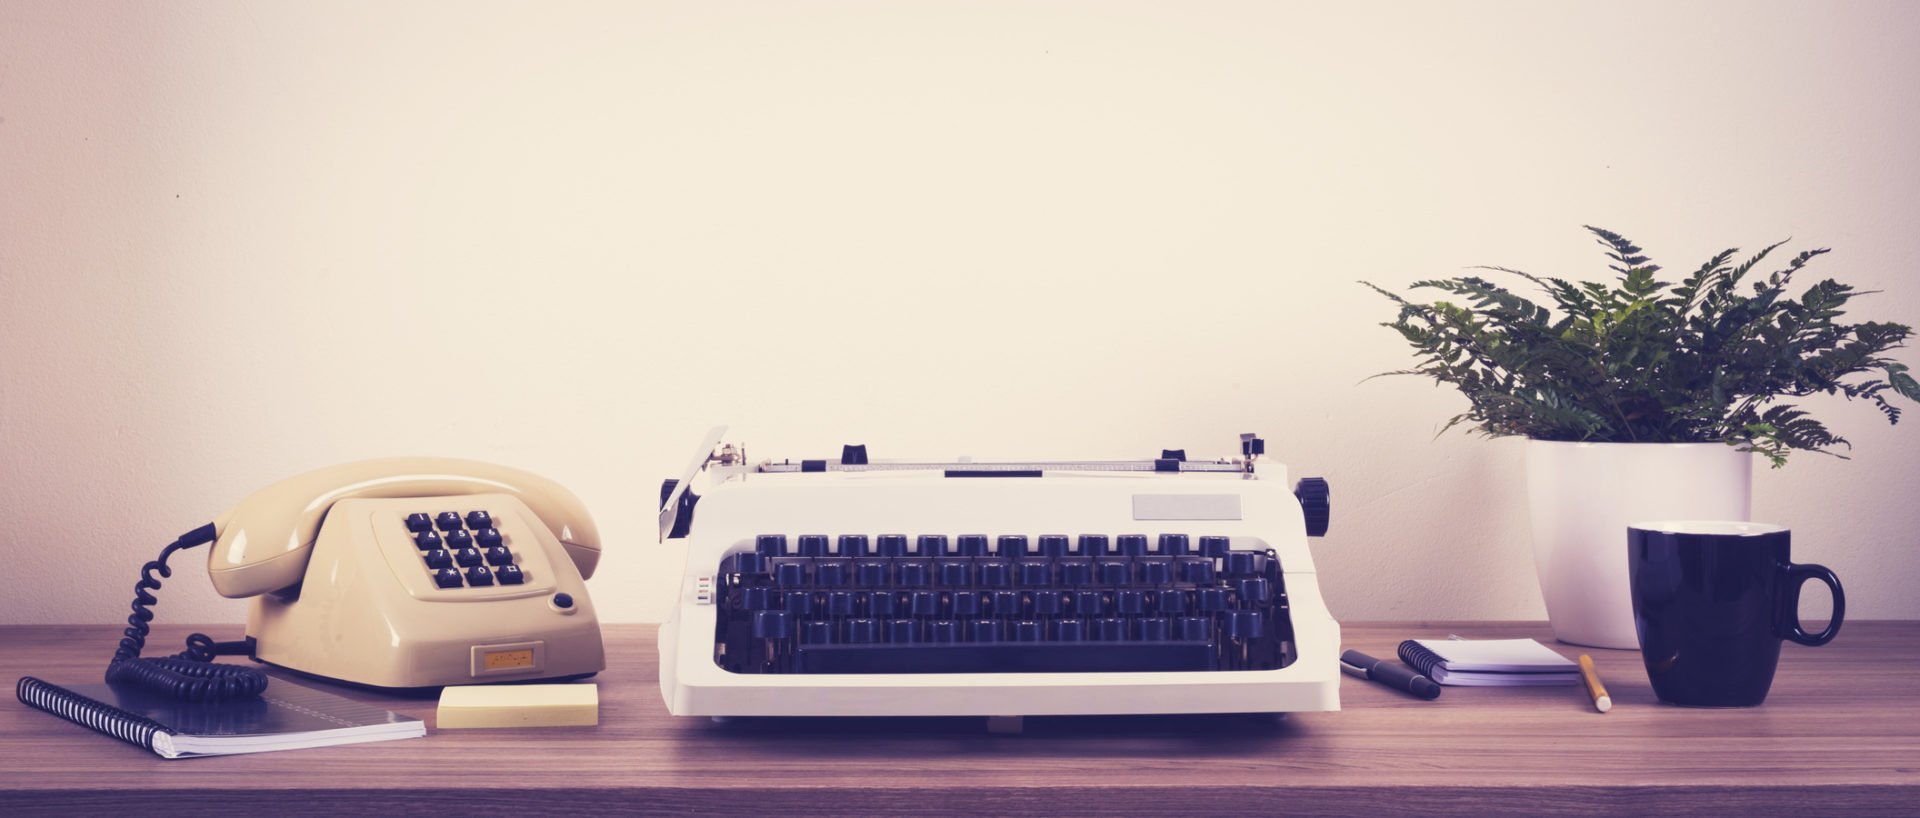 retro typewriter and phone